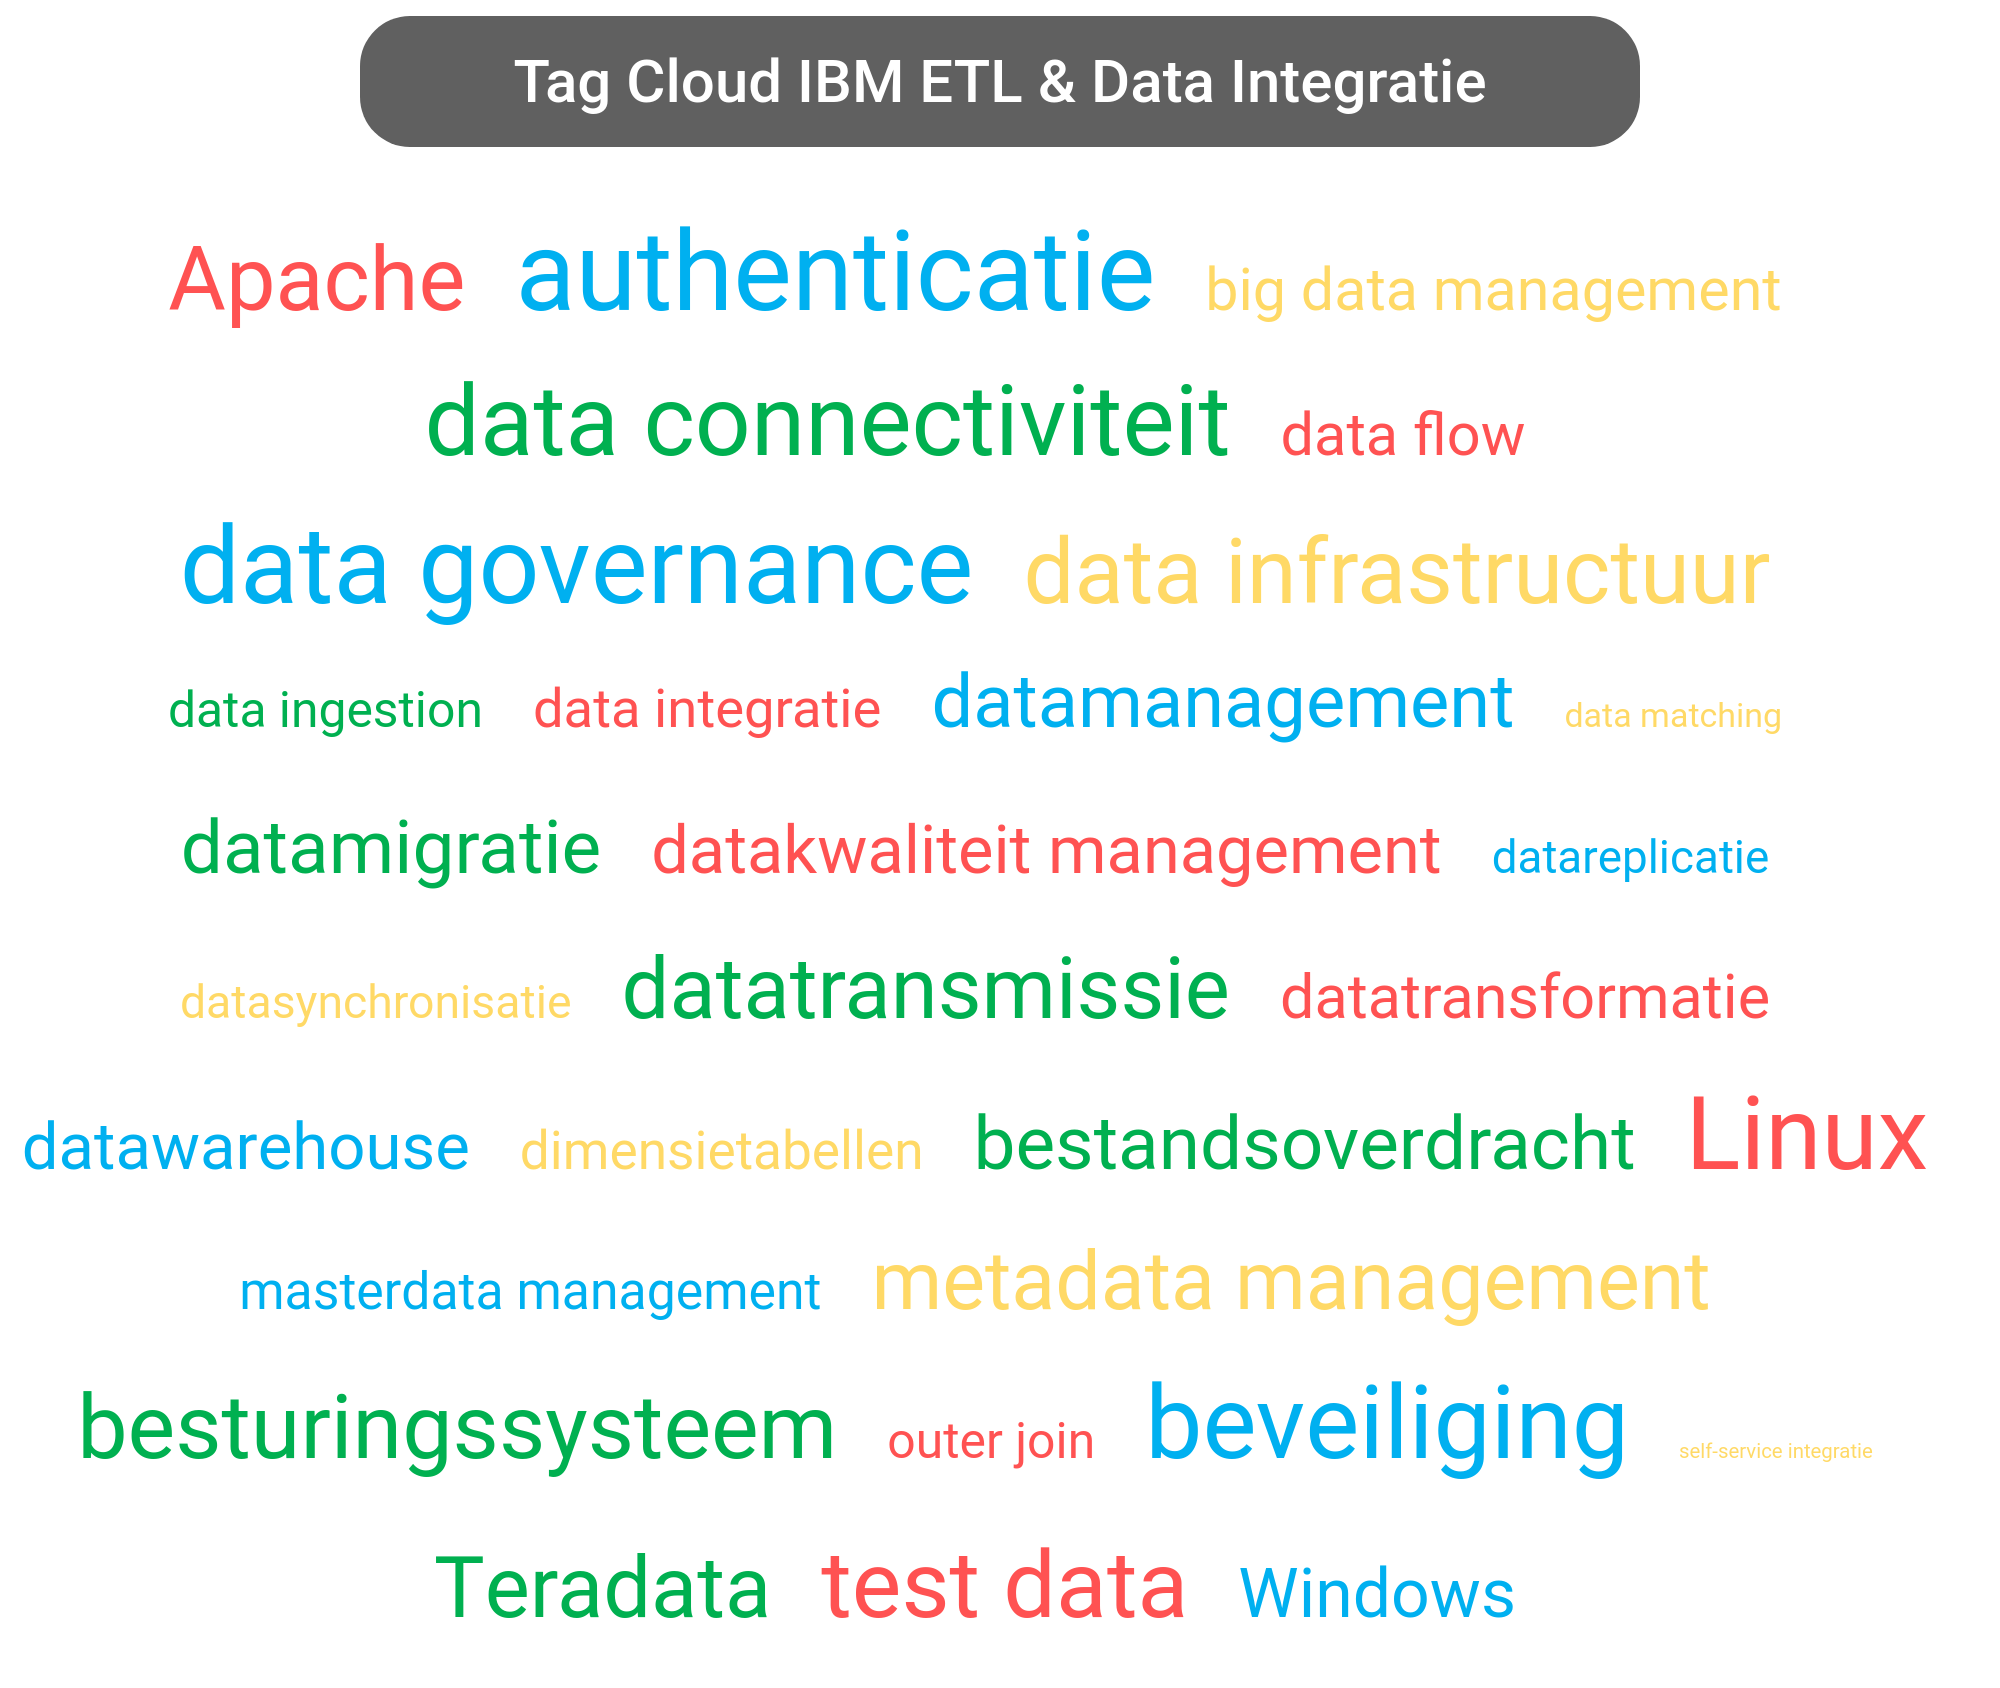 Tag cloud van IBM Data Integration tools.